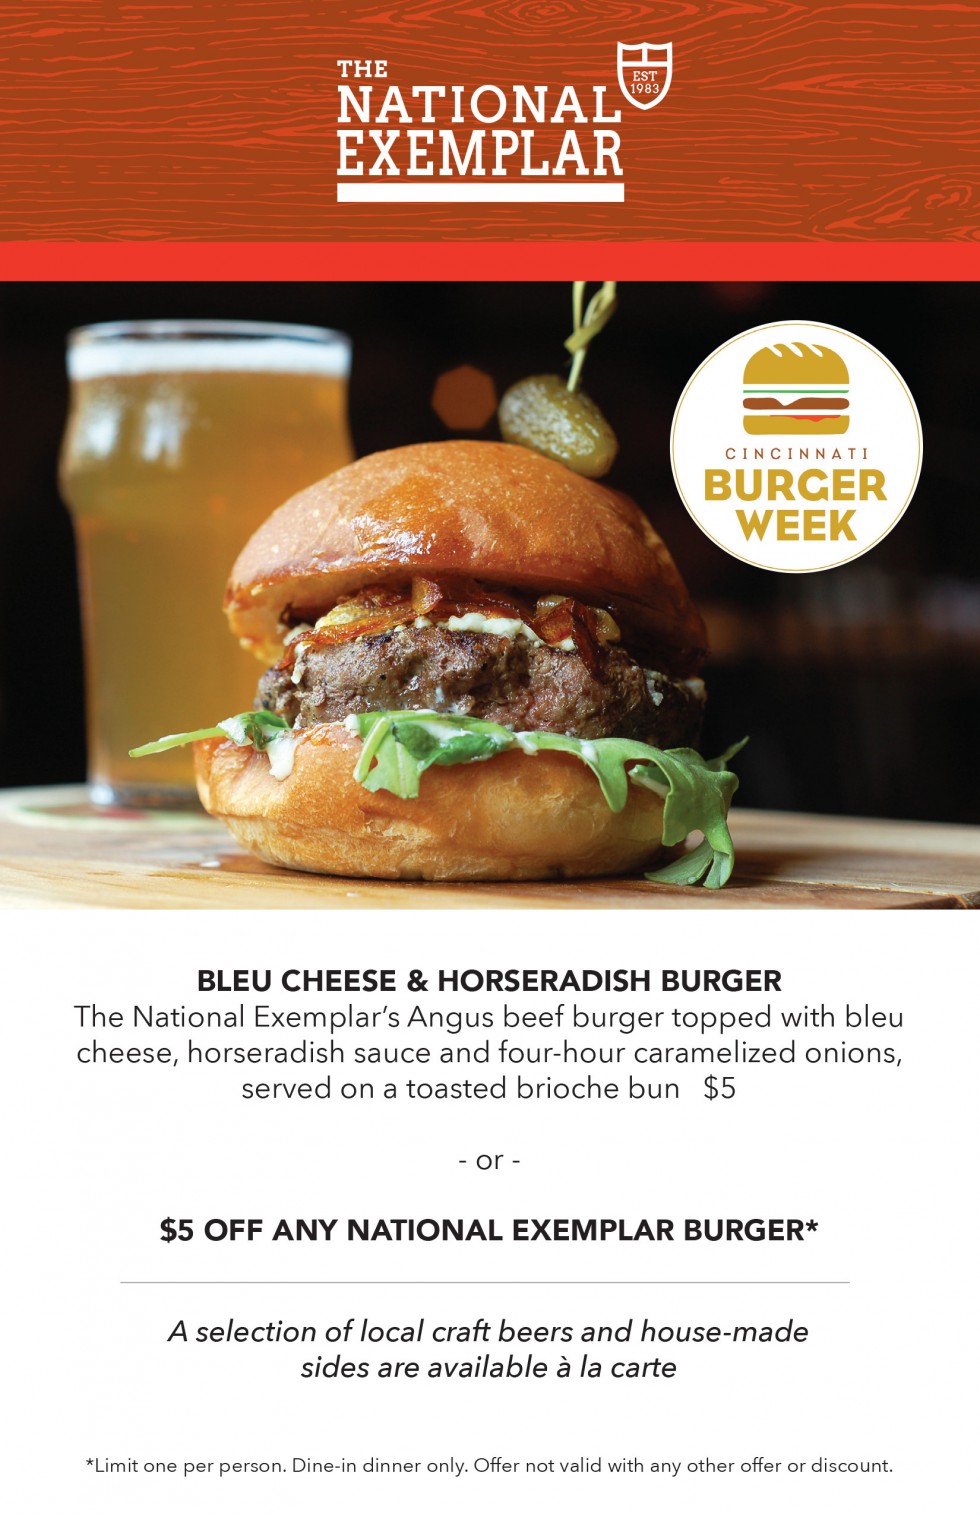 Cincinnati Burger Week is here!